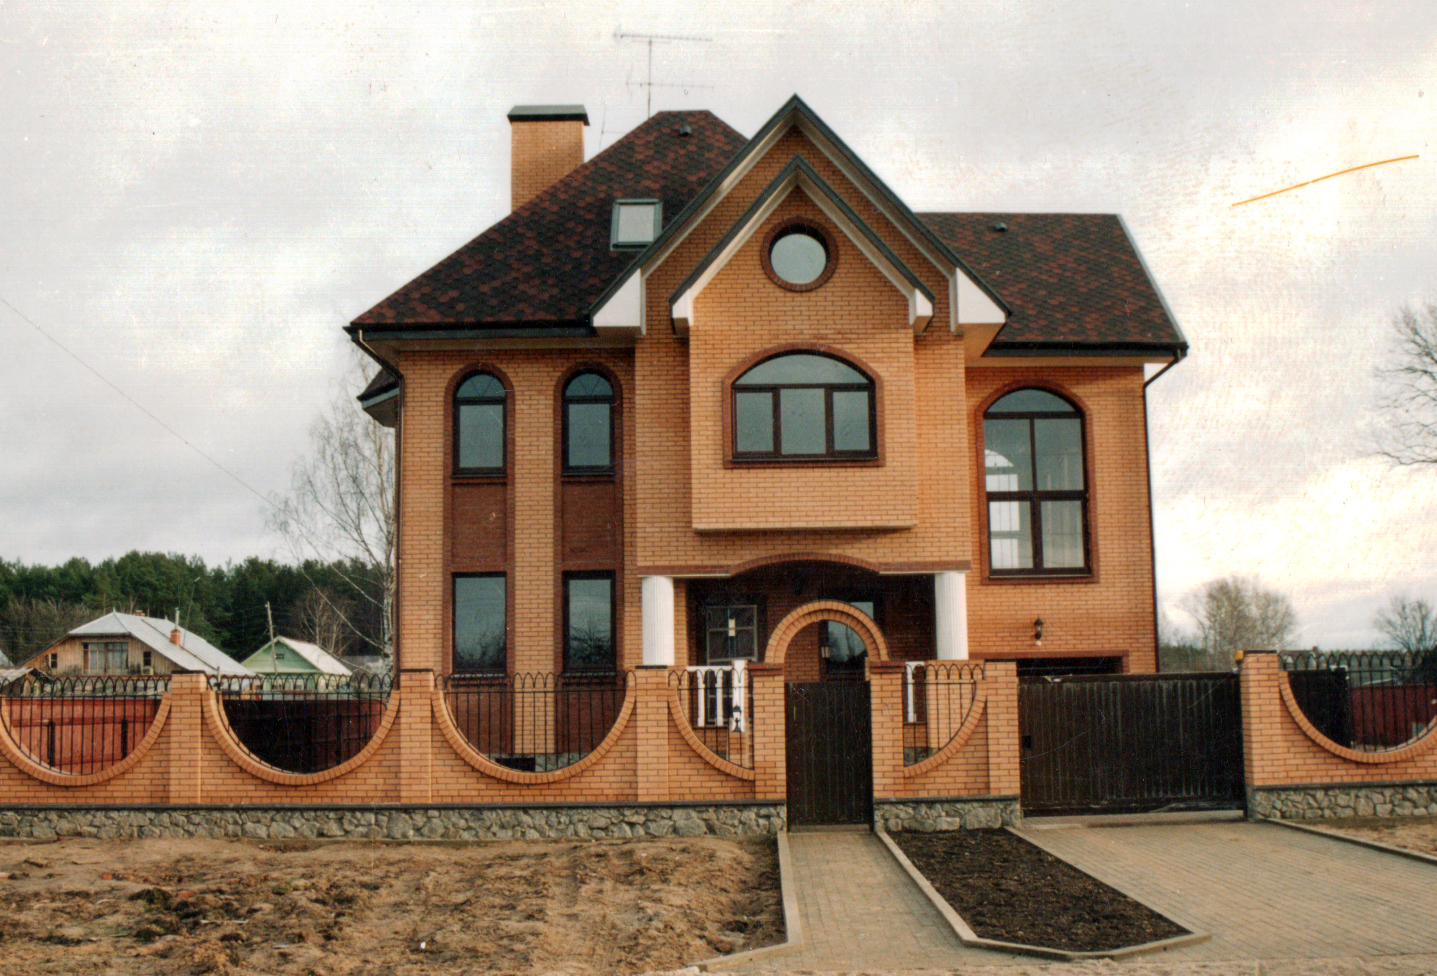 Кирпичный дом